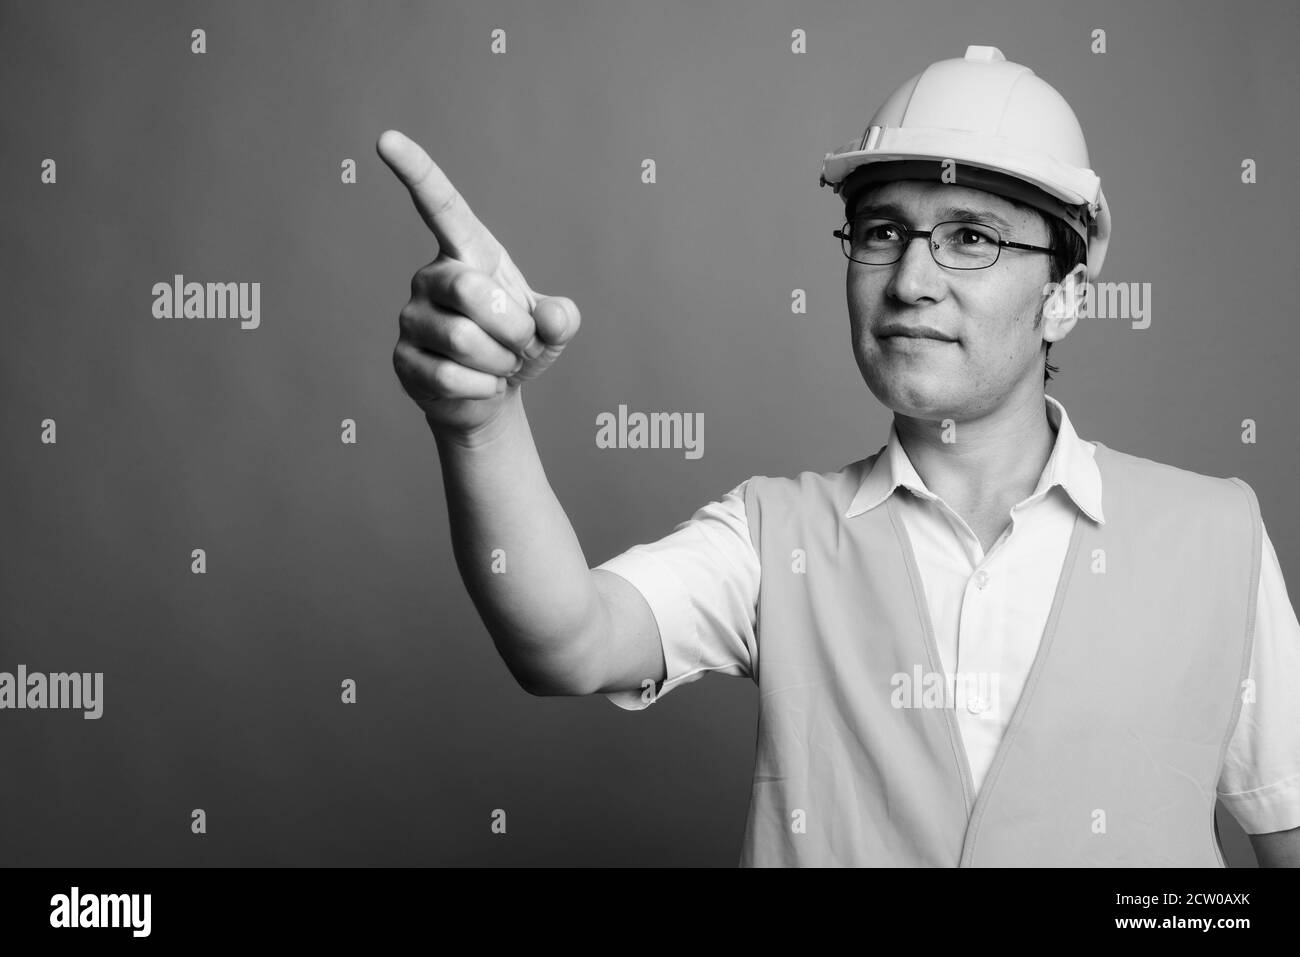 Jeune homme asiatique travailleur de la construction portant des lunettes sur fond gris Banque D'Images